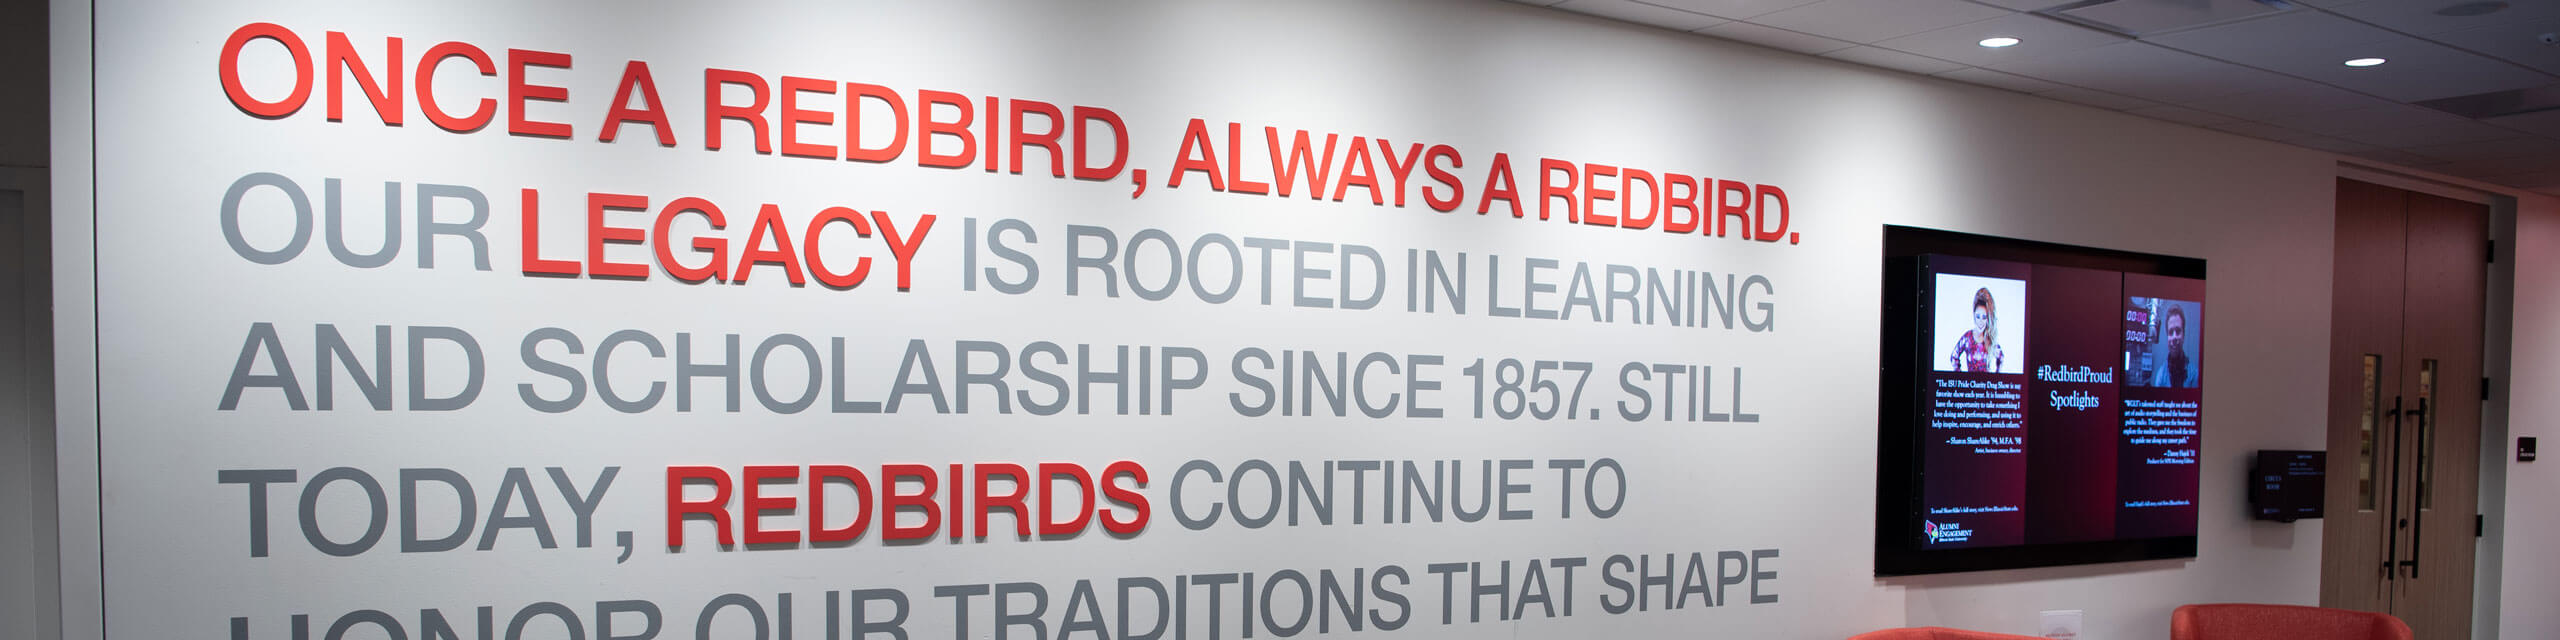 Wall in the Bone Student Center that reads 'Once a Redbird, Always a Redbird'.